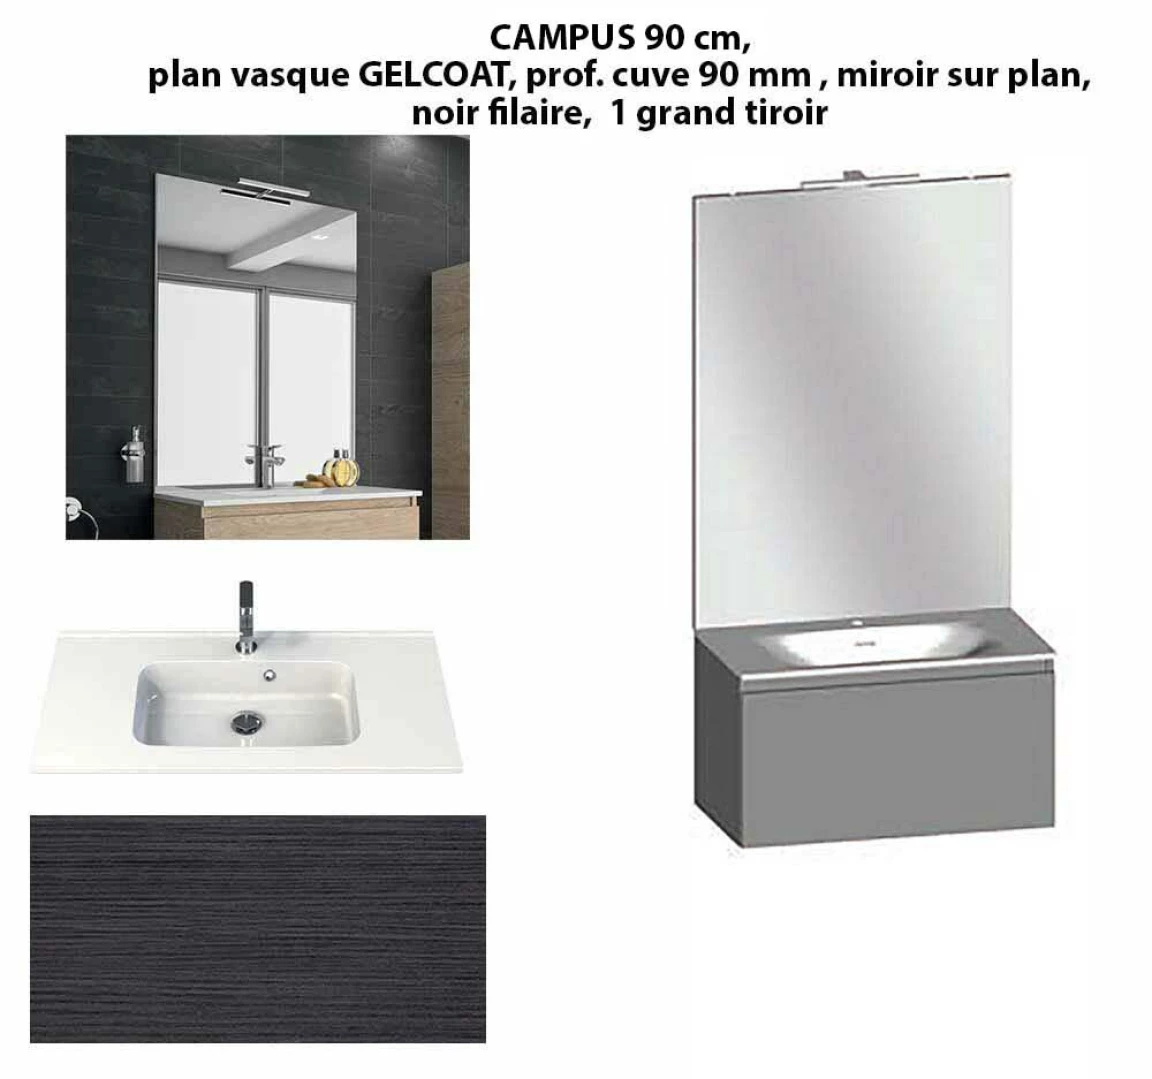 Ensemble meuble de salle de bain CAMPUS 90 cm, plan vasque GELCOAT, prof. cuve 90 mm, miroir sur plan, noir filaire, 1 grand tiroir